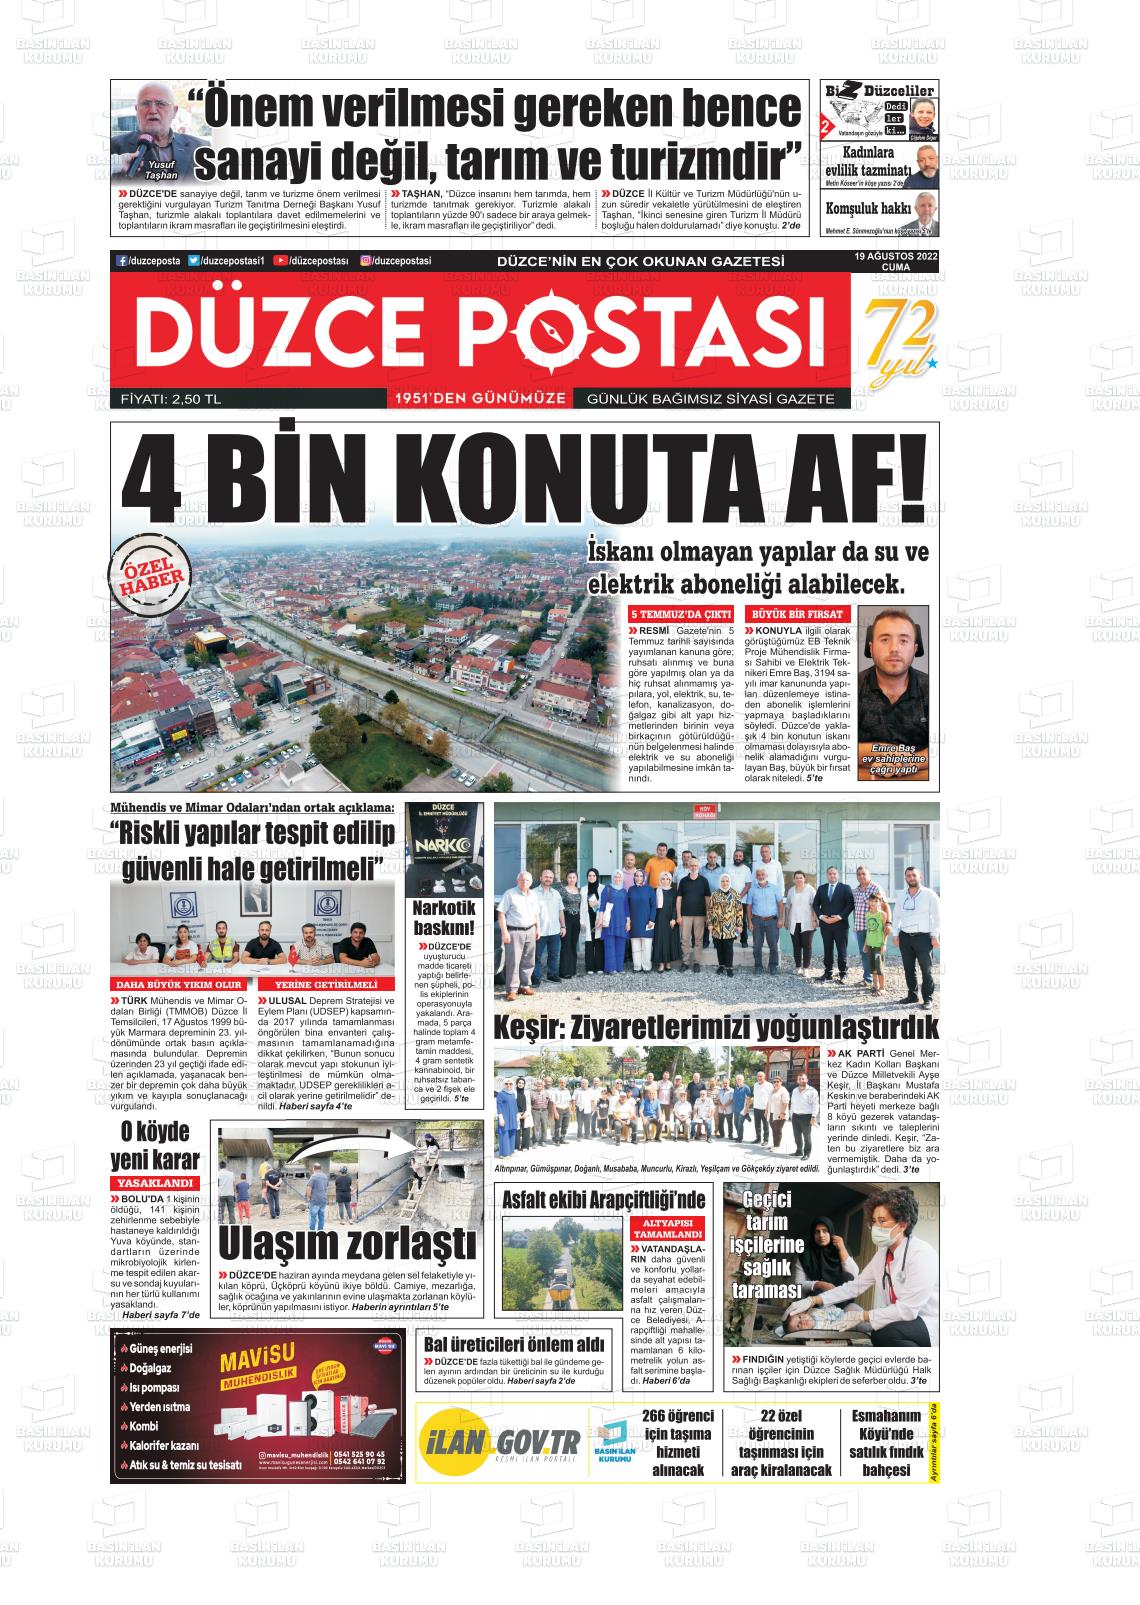 19 Ağustos 2022 Düzce Postası Gazete Manşeti